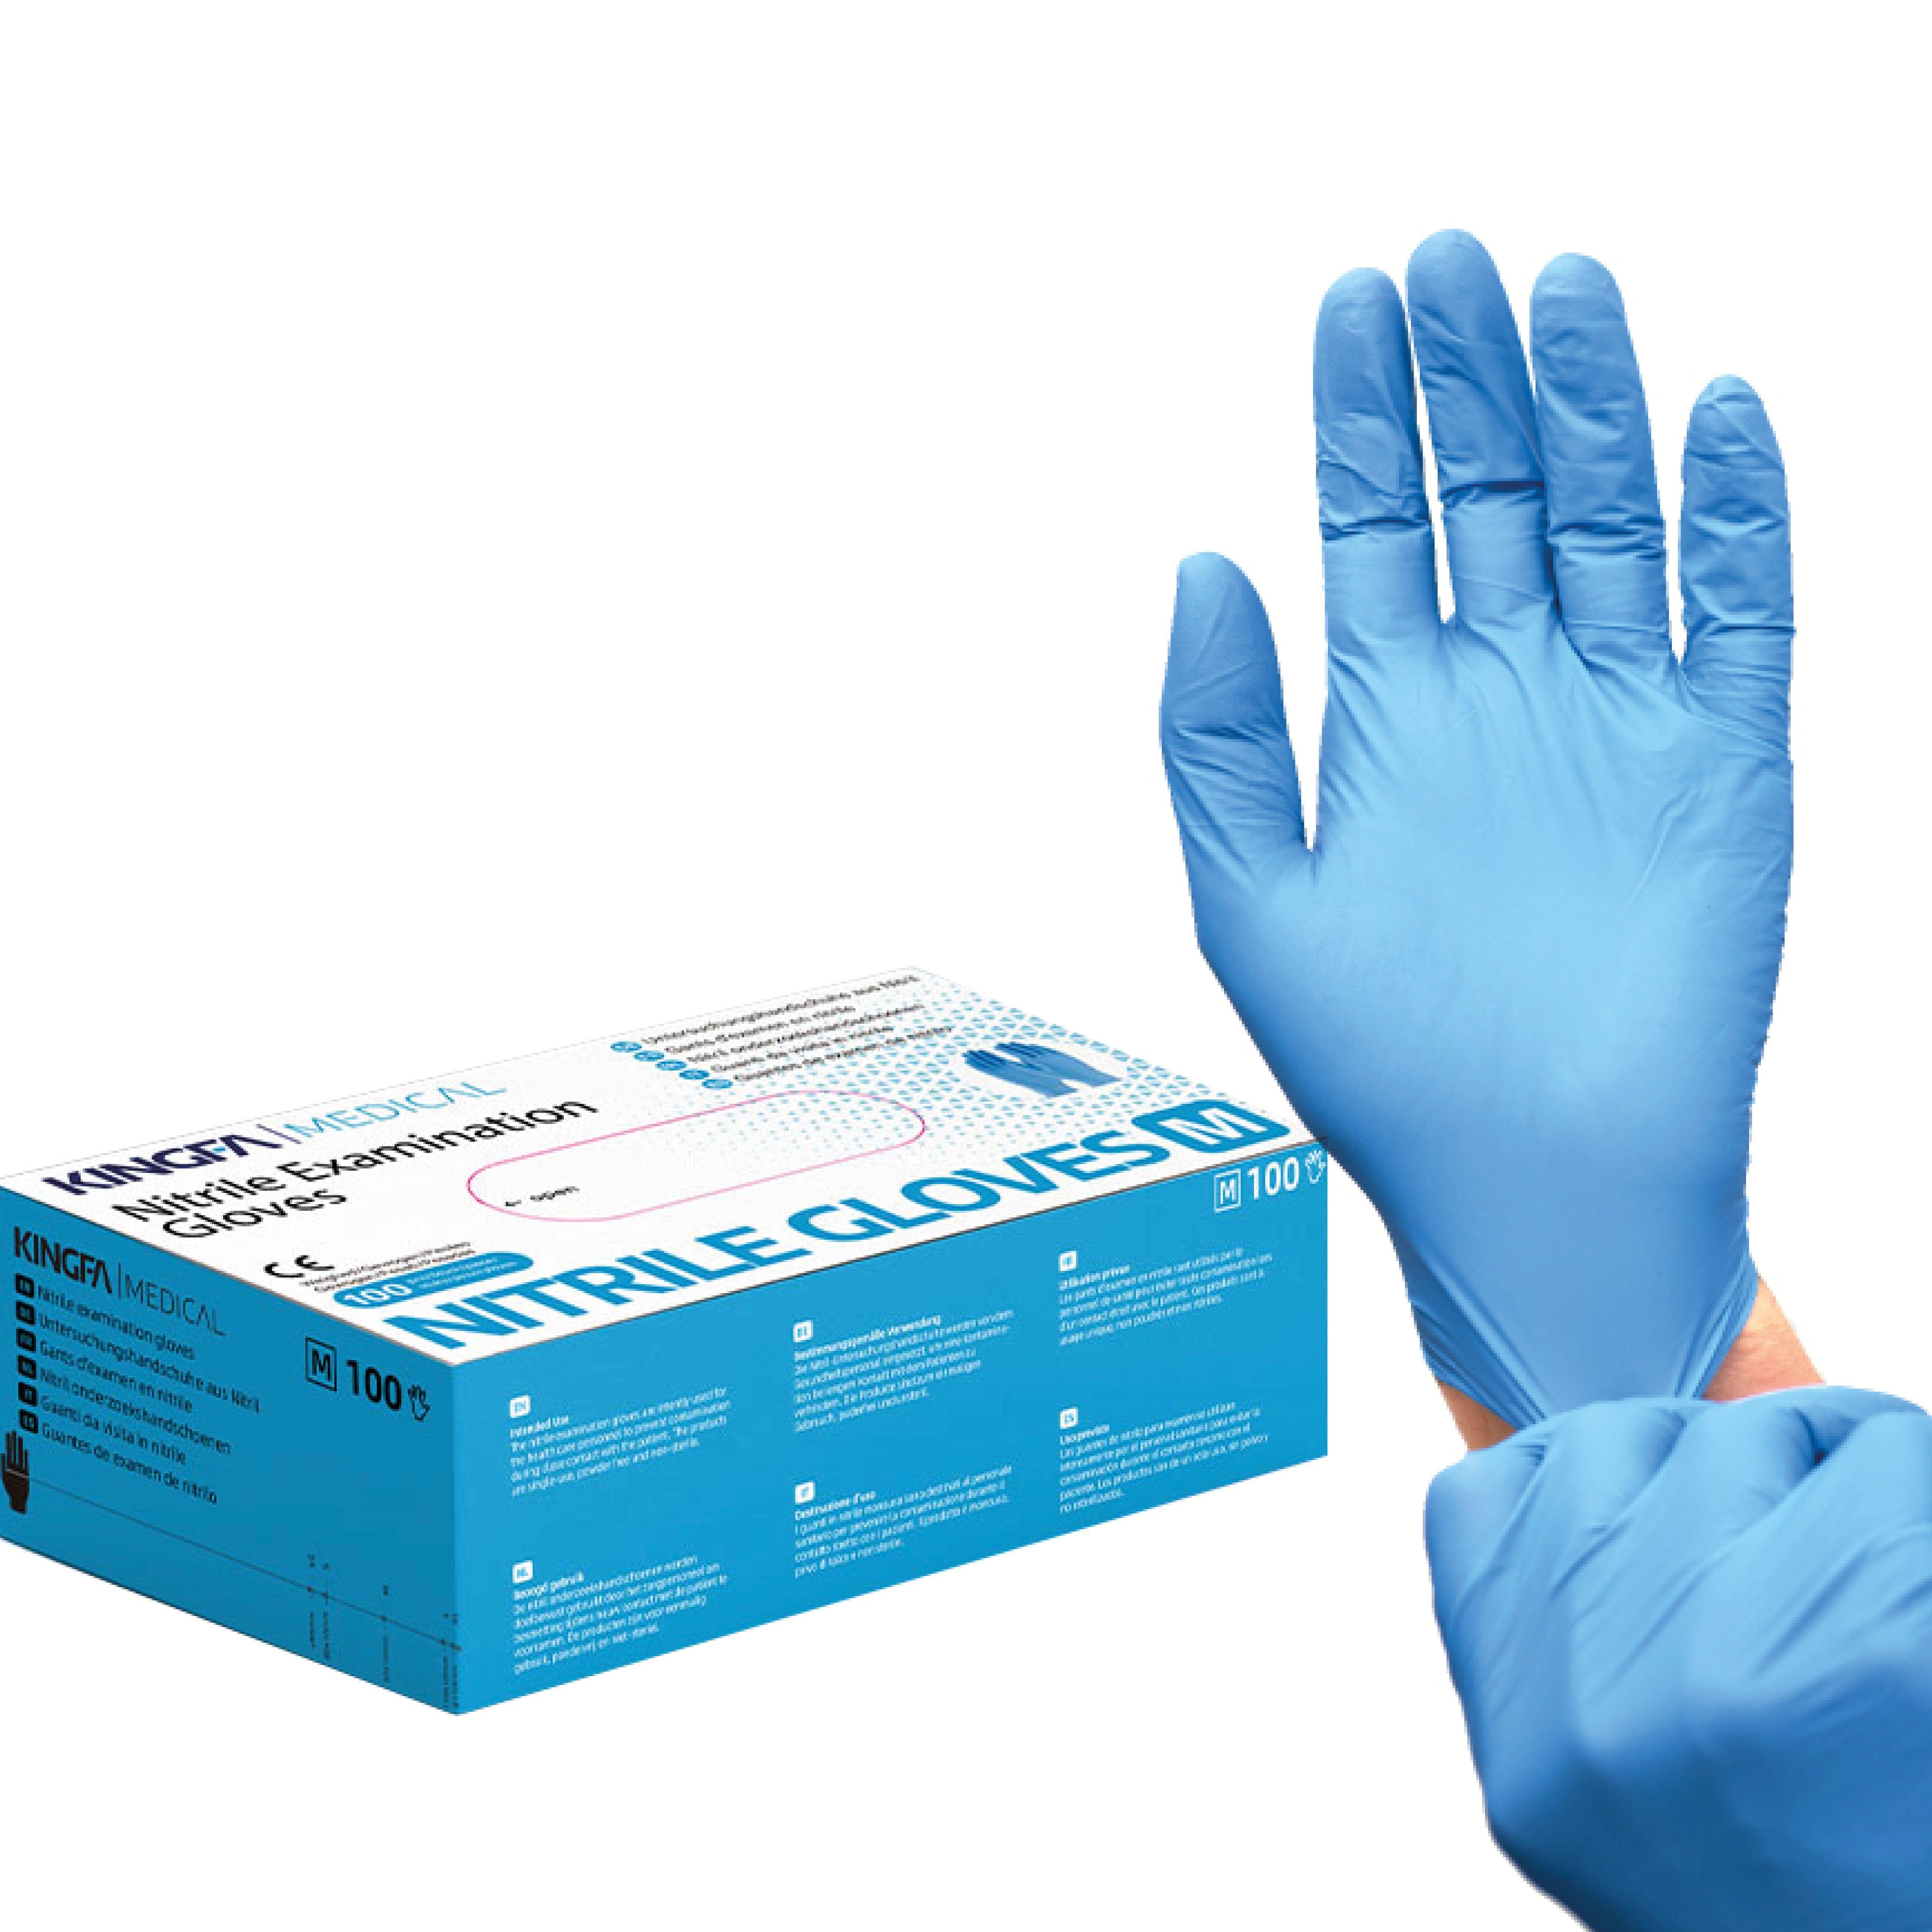 Schutz (Medizinische Qualitätsware) Kingfa Zum Nitril-Handschuhe